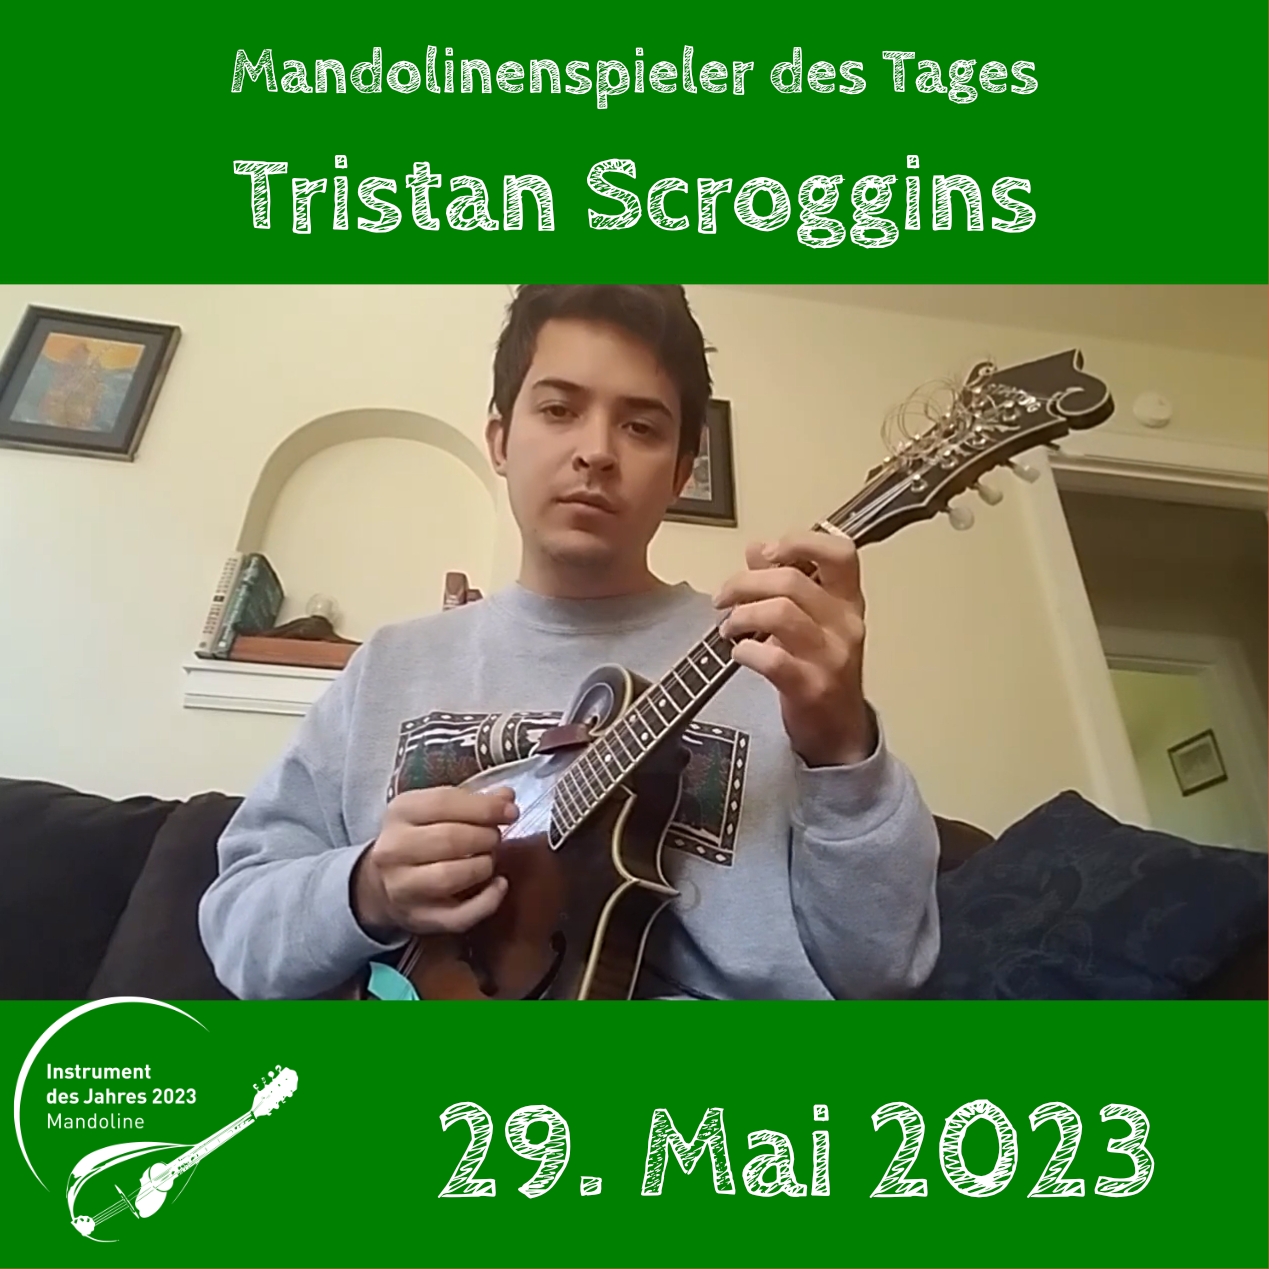 Tristan Scroggins Mandolinenspielerin Mandolinenspieler des Tages Mandoline Instrument des Jahres 2023